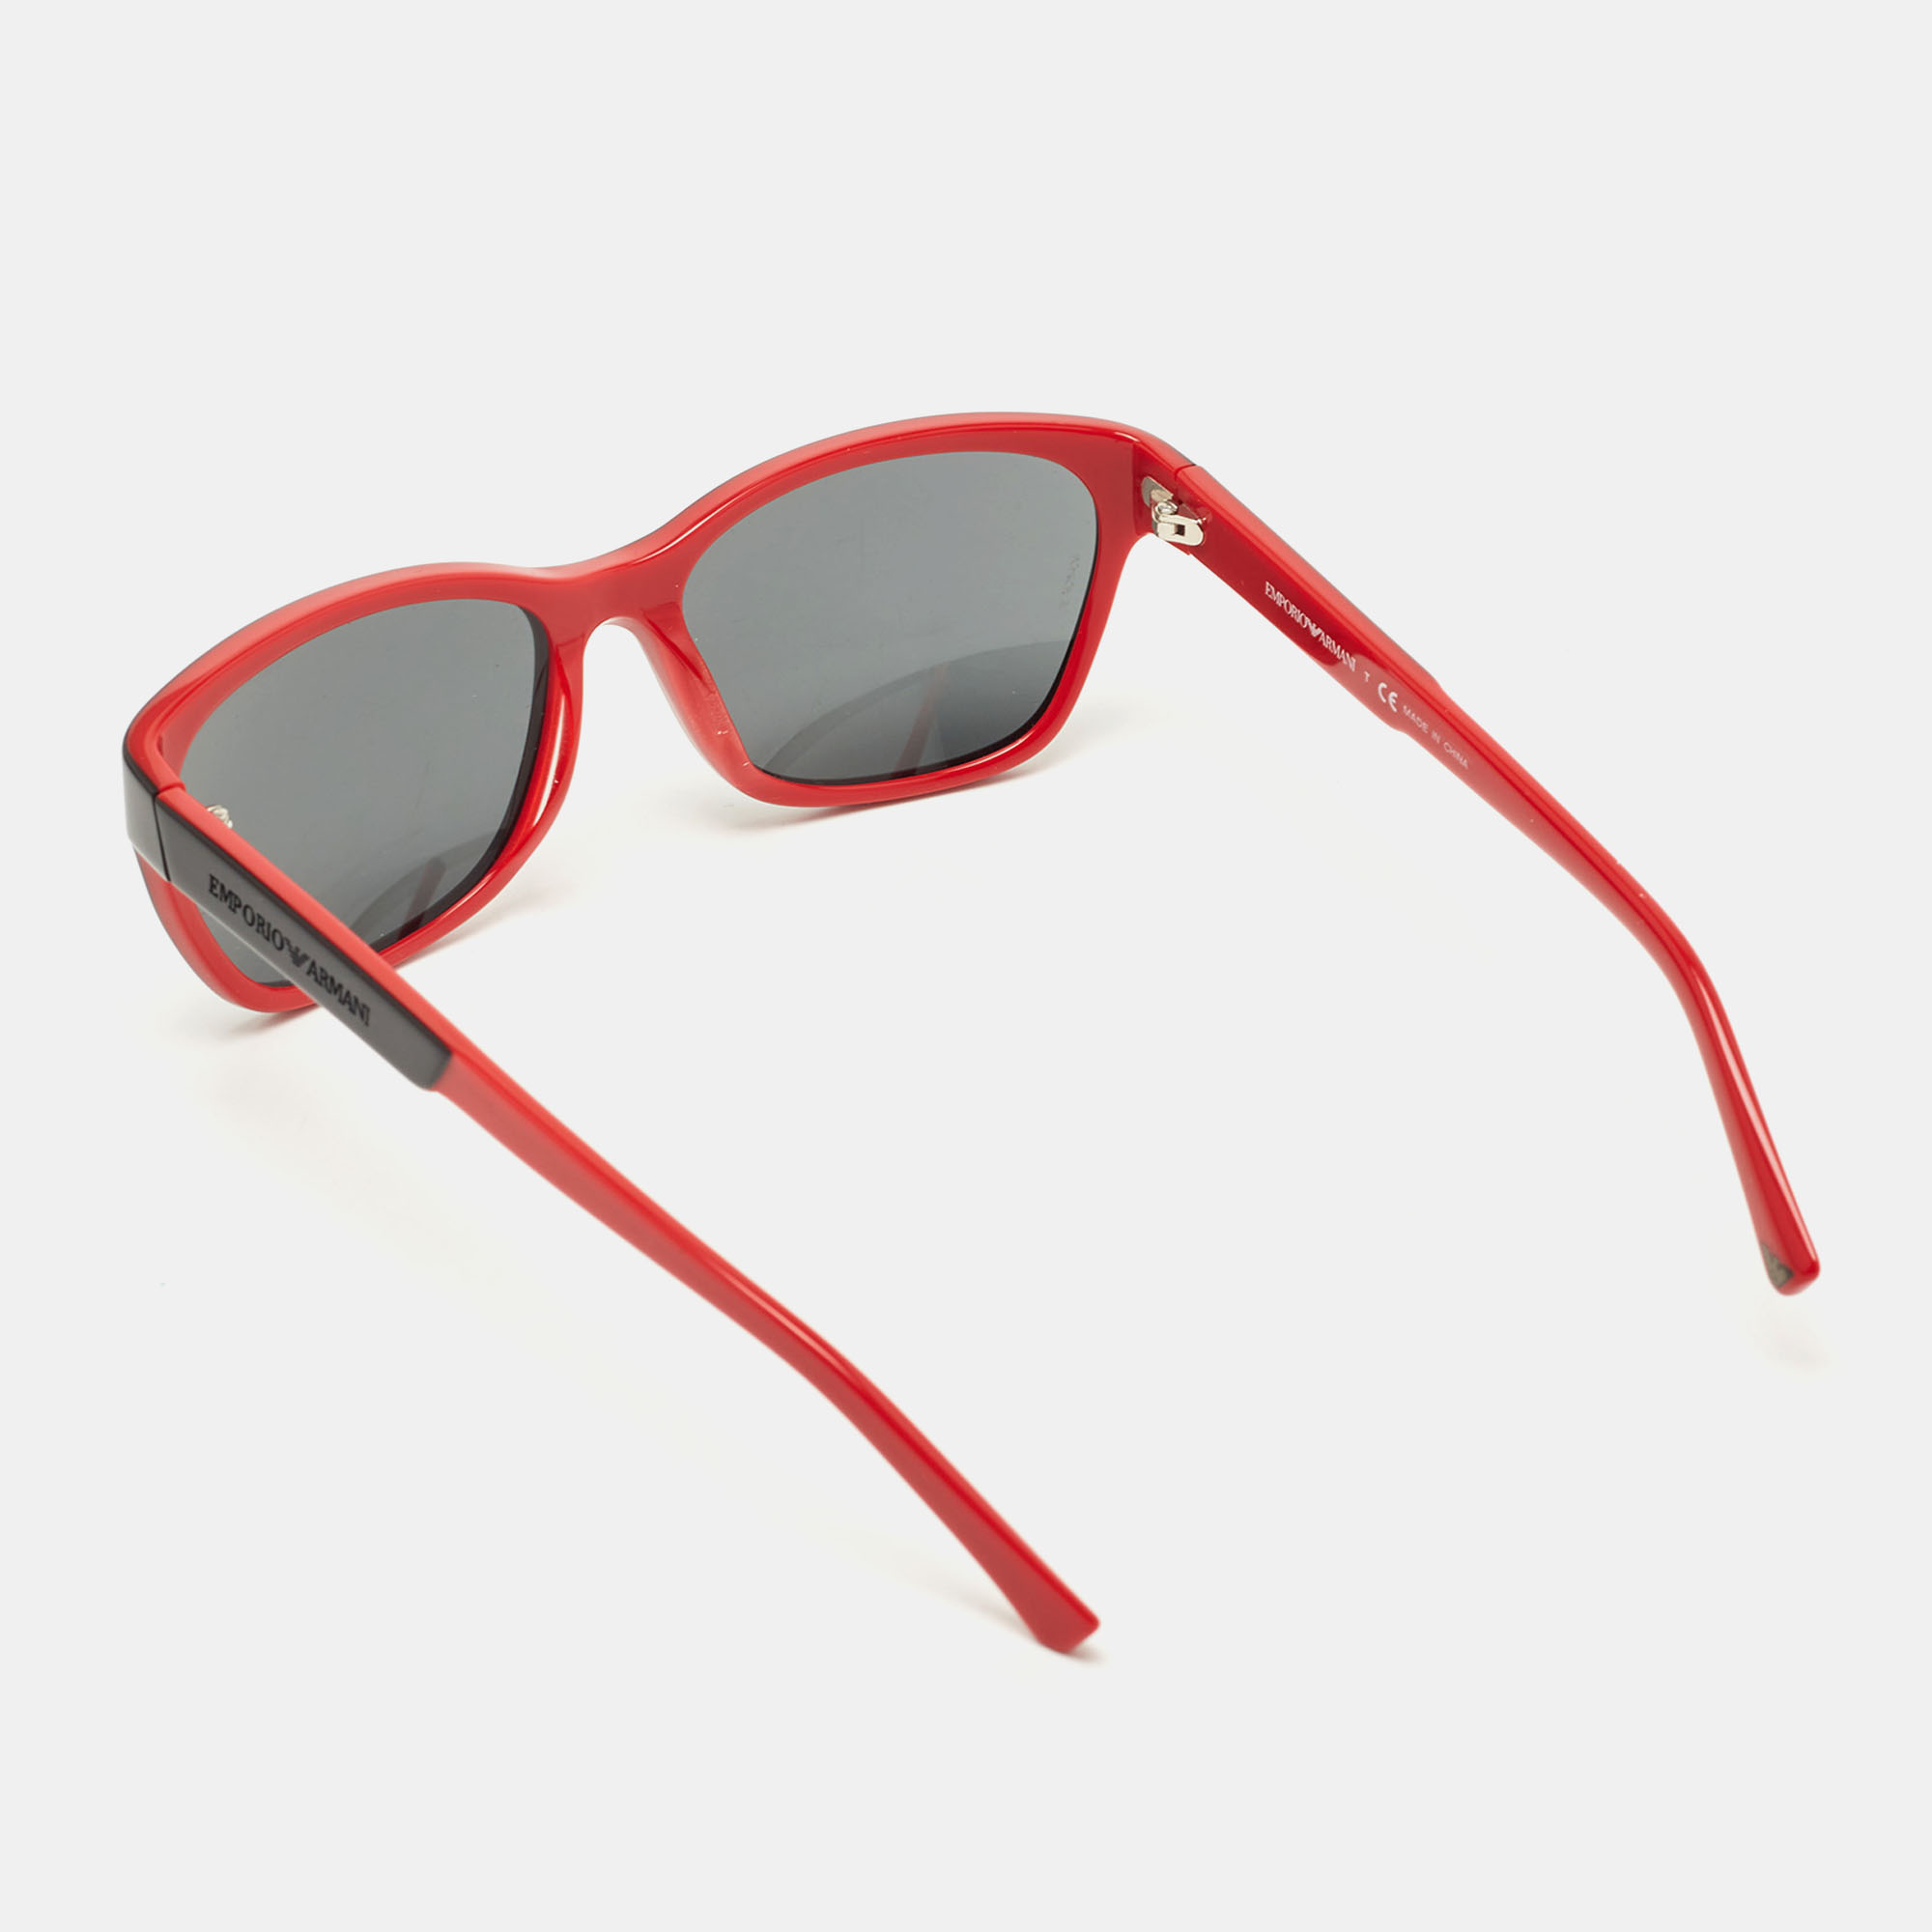 Emporio Armani Red/Black Gradient Rectangular Sunglasses